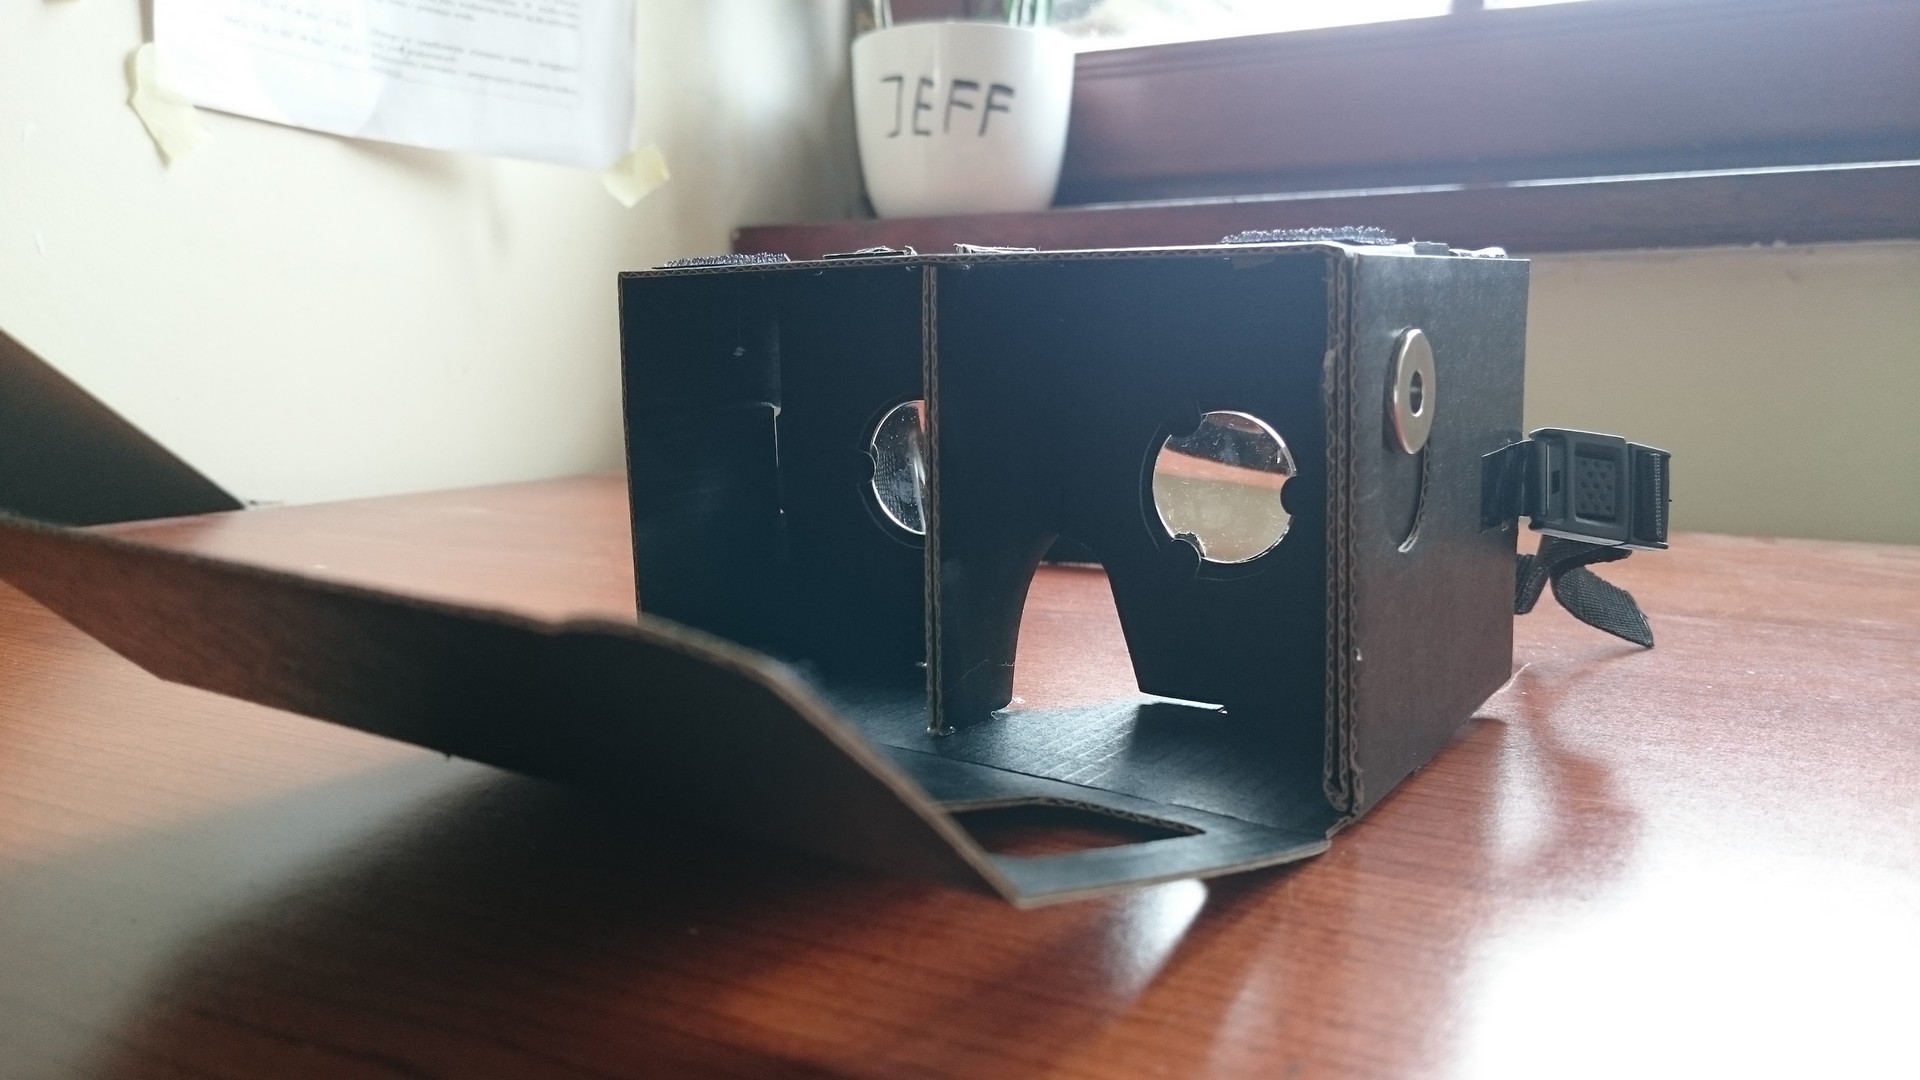 
Czekając na Oculusa
, Google Cardboard - kartonowa wirtualna rzeczywistość dla każdego